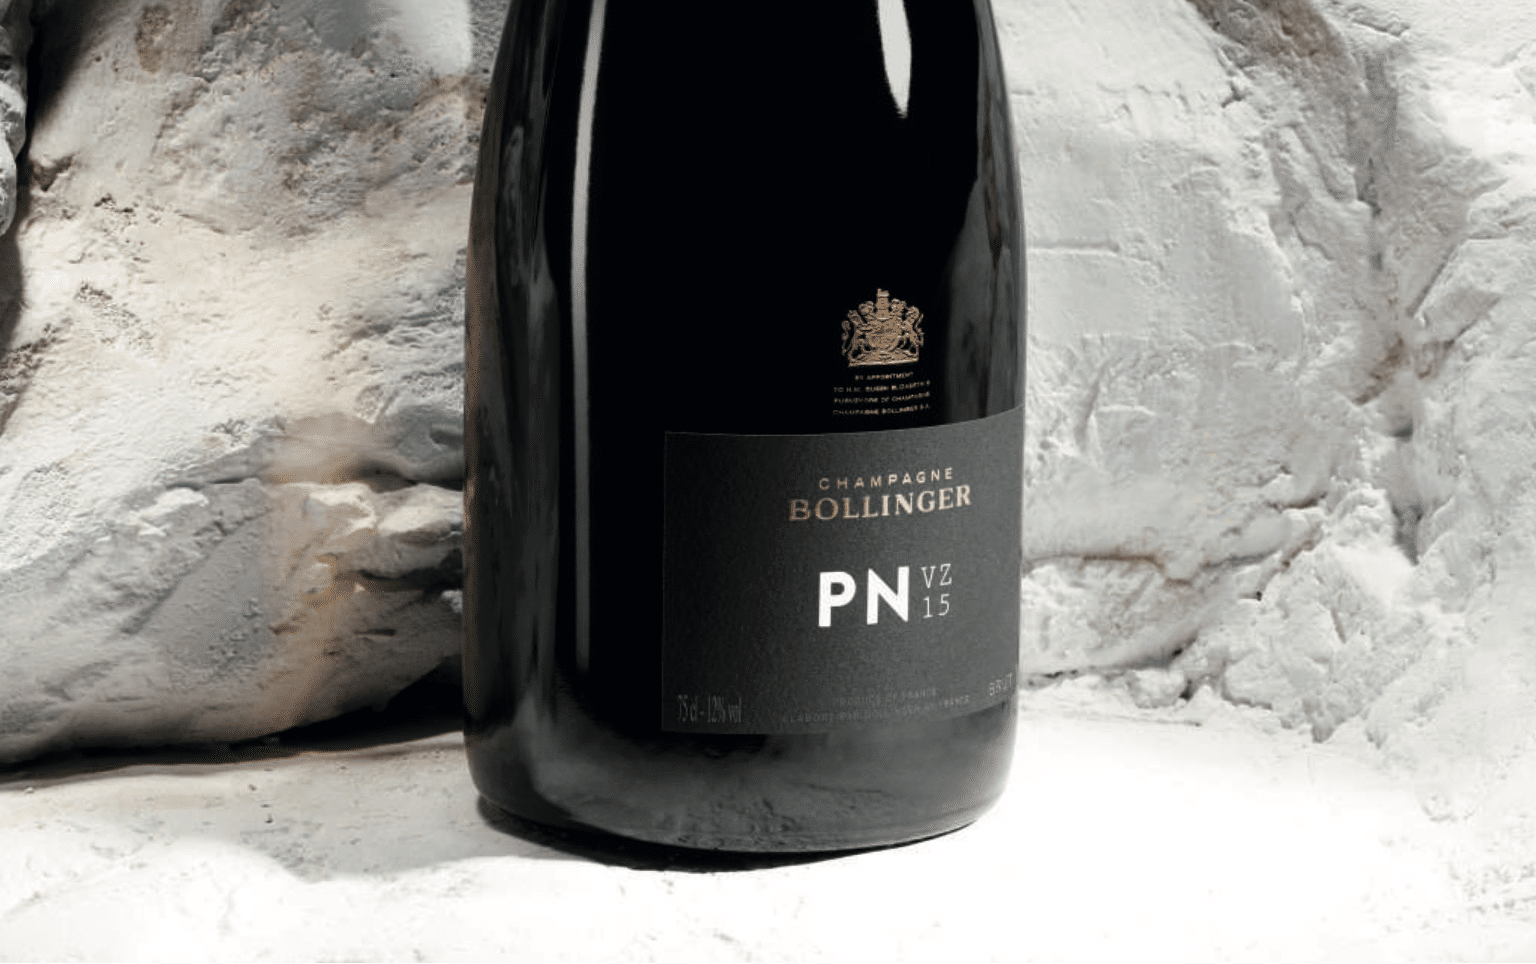 Dégustation a la volée #27 : Champagne Bollinger PN VZ15